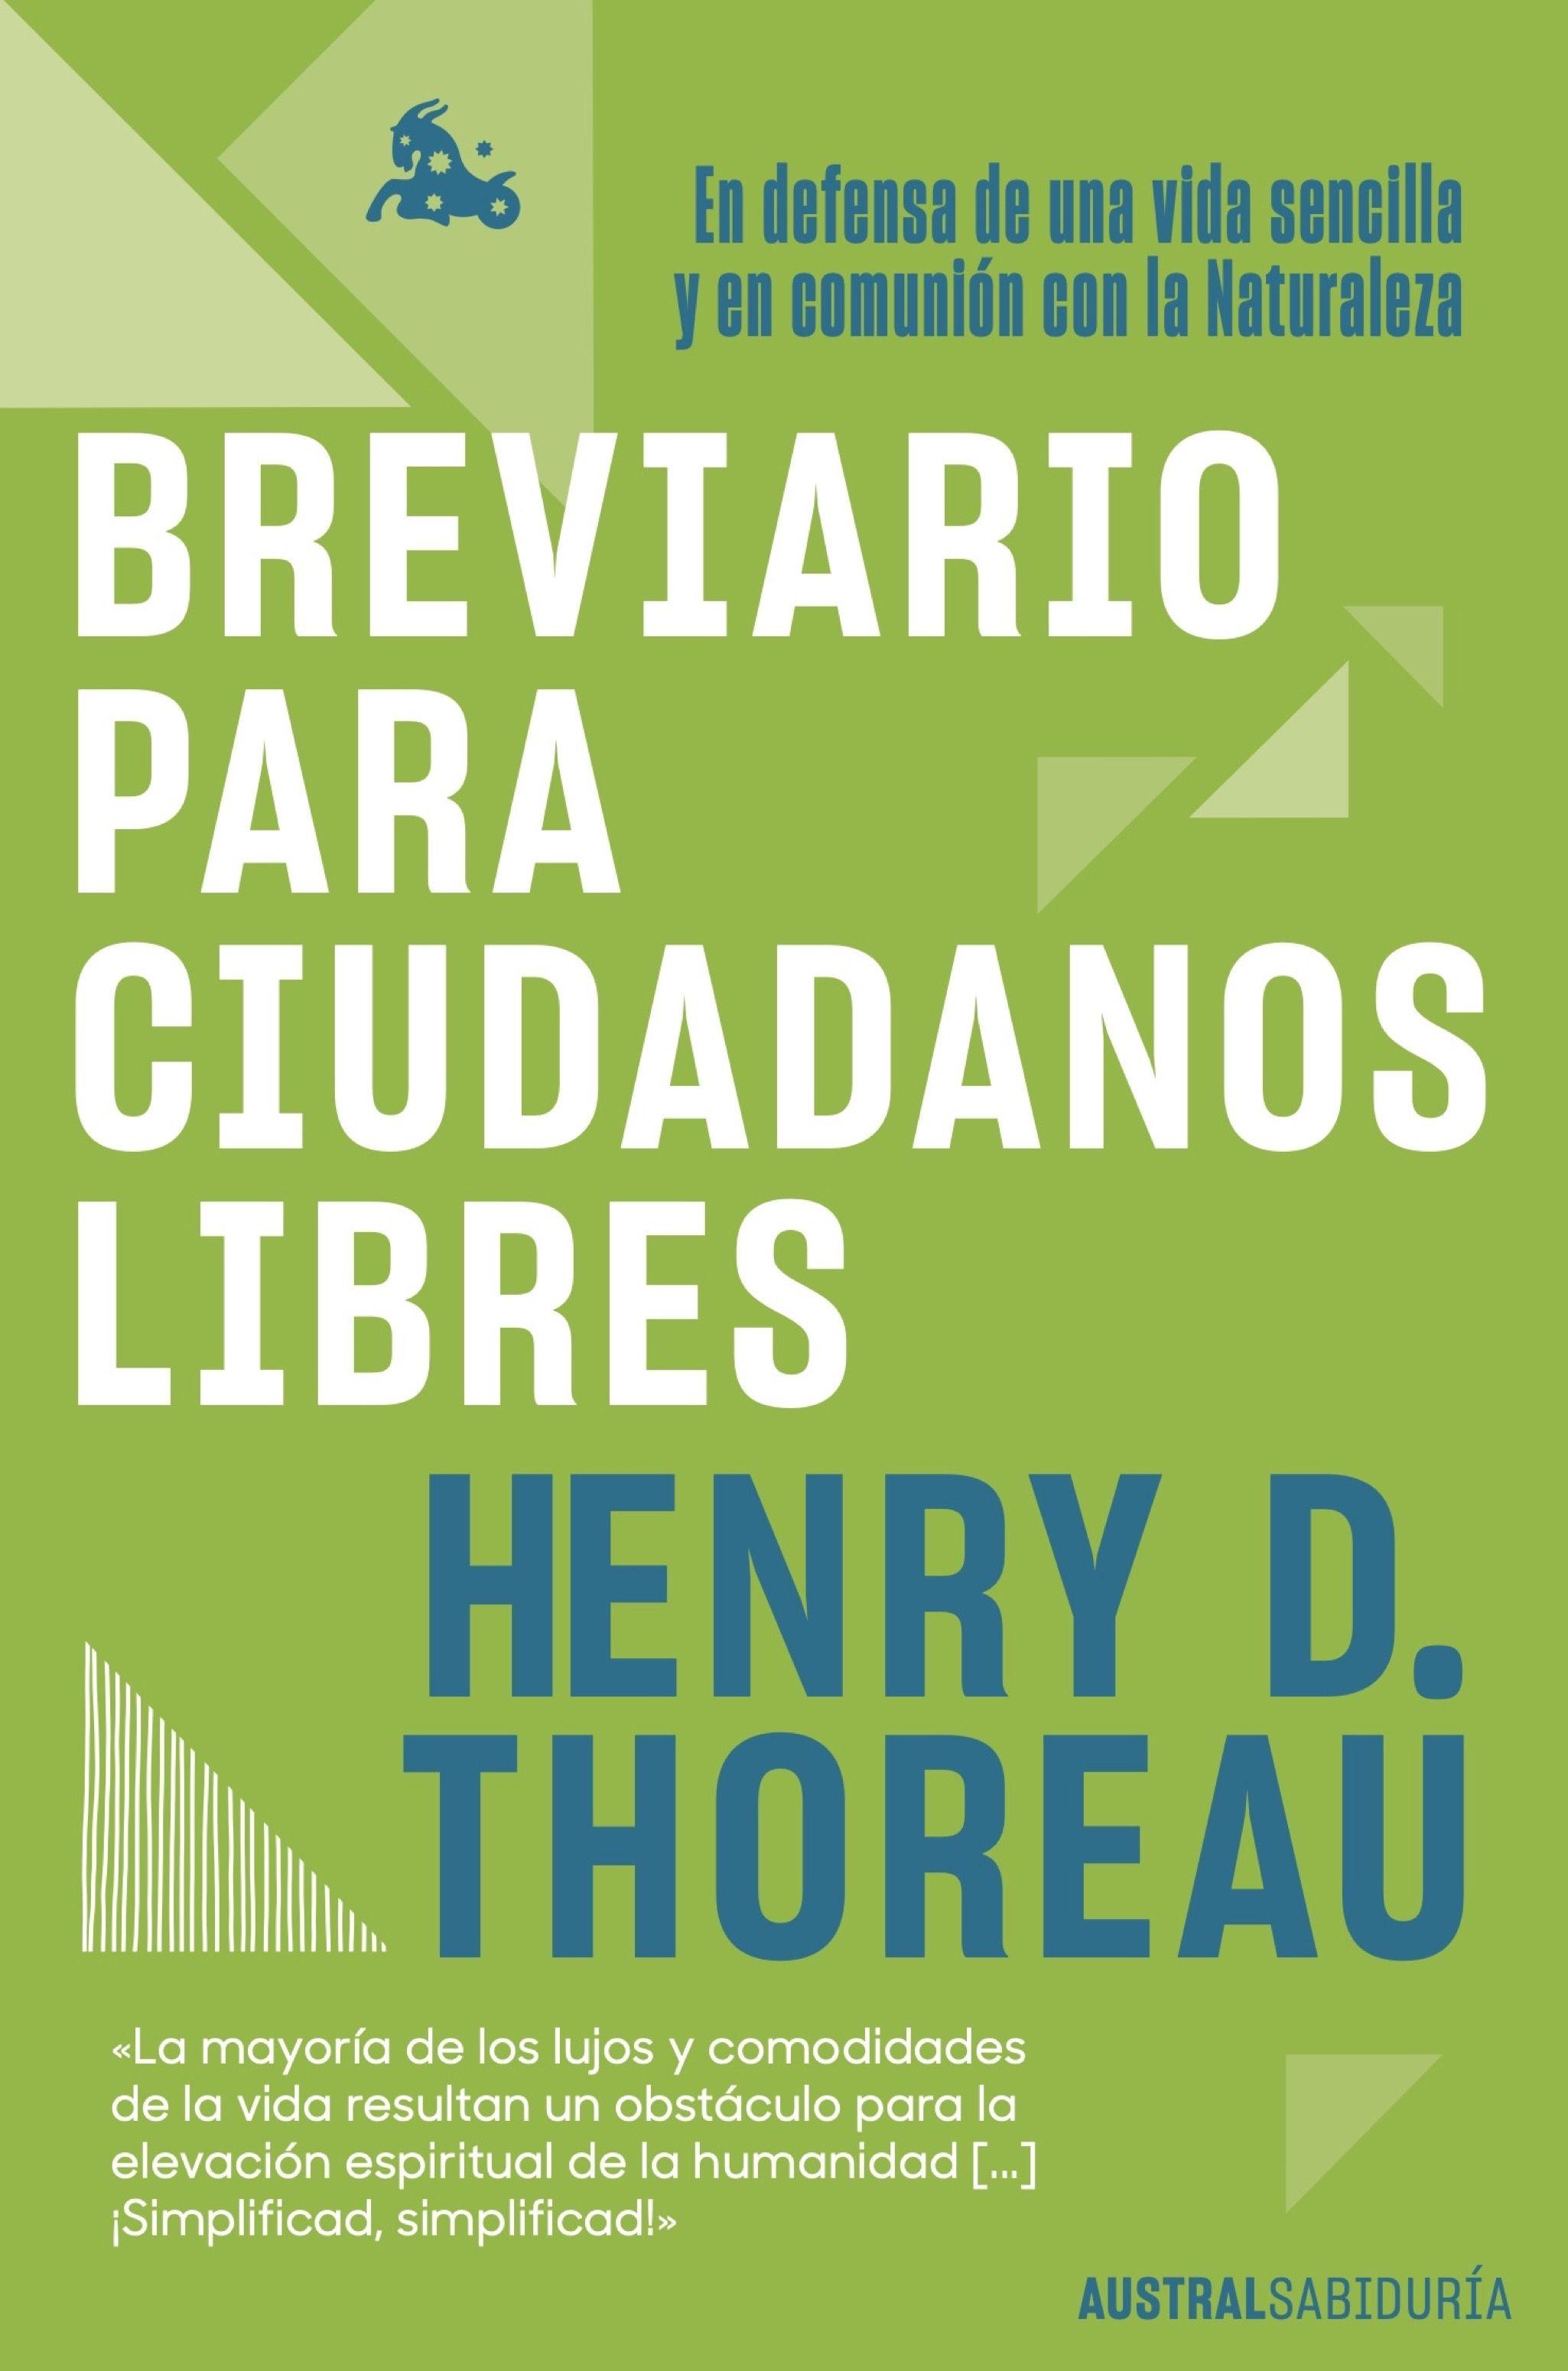 Breviario para Ciudadanos Libres "En Defensa de una Vida Sencilla y en Comunión con la Naturaleza". 